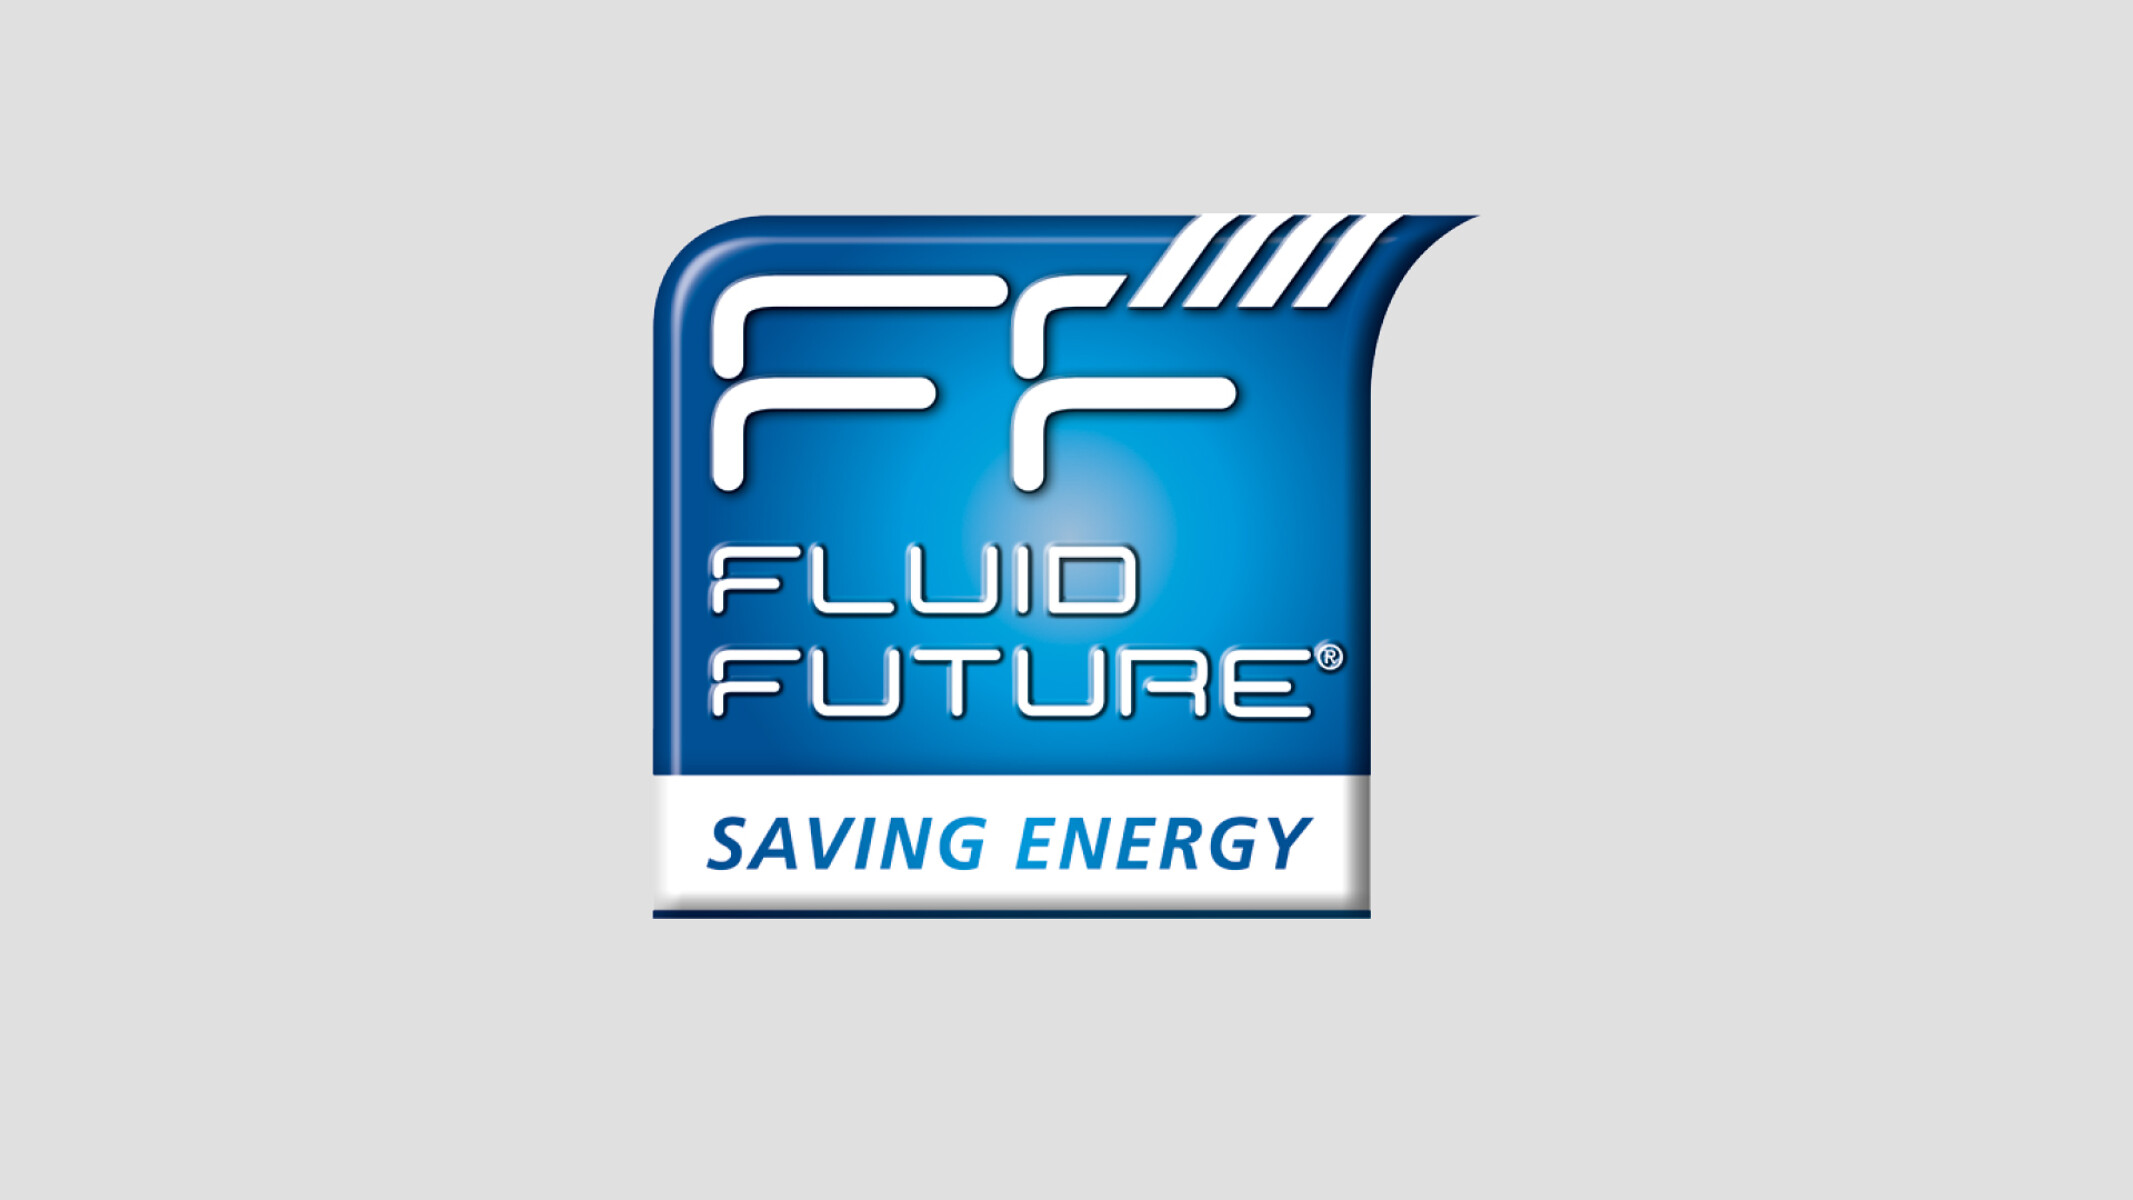 การให้คำปรึกษาเรื่องประสิทธิภาพด้านพลังงาน (Fluid Future) สำหรับปั๊มและวาล์ว